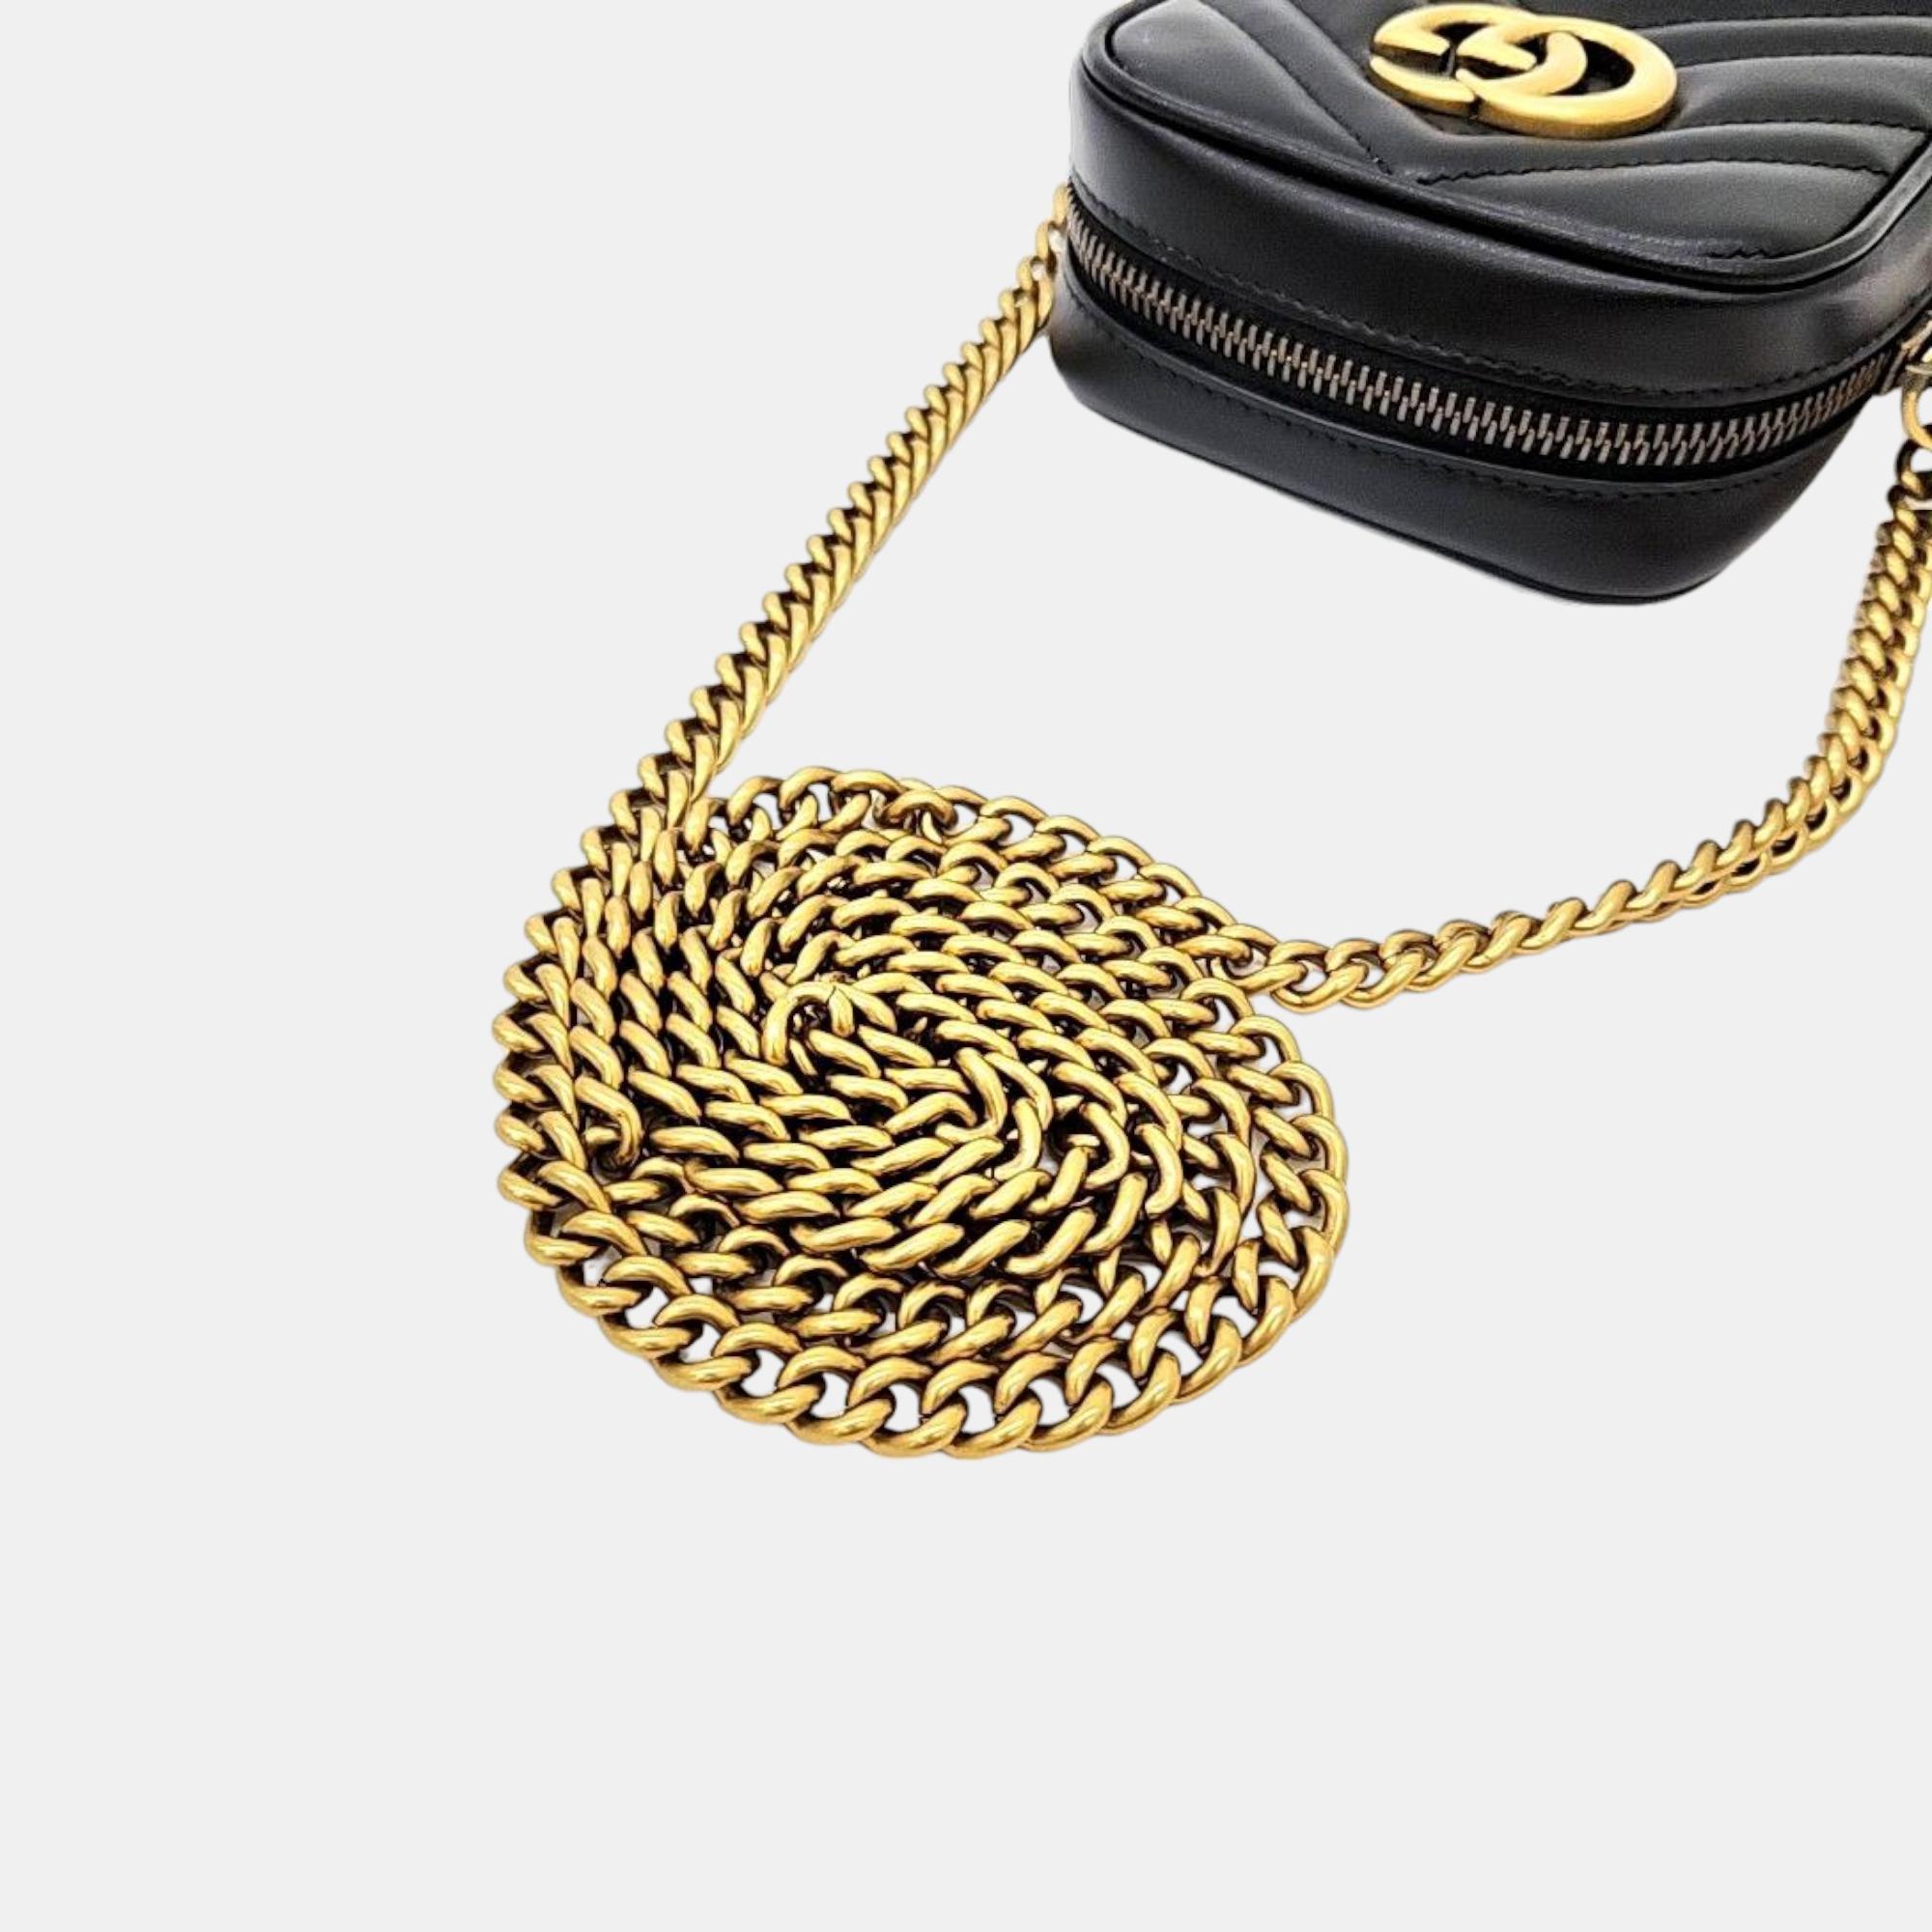 Gucci GG Marmont Mini Bag (598597)